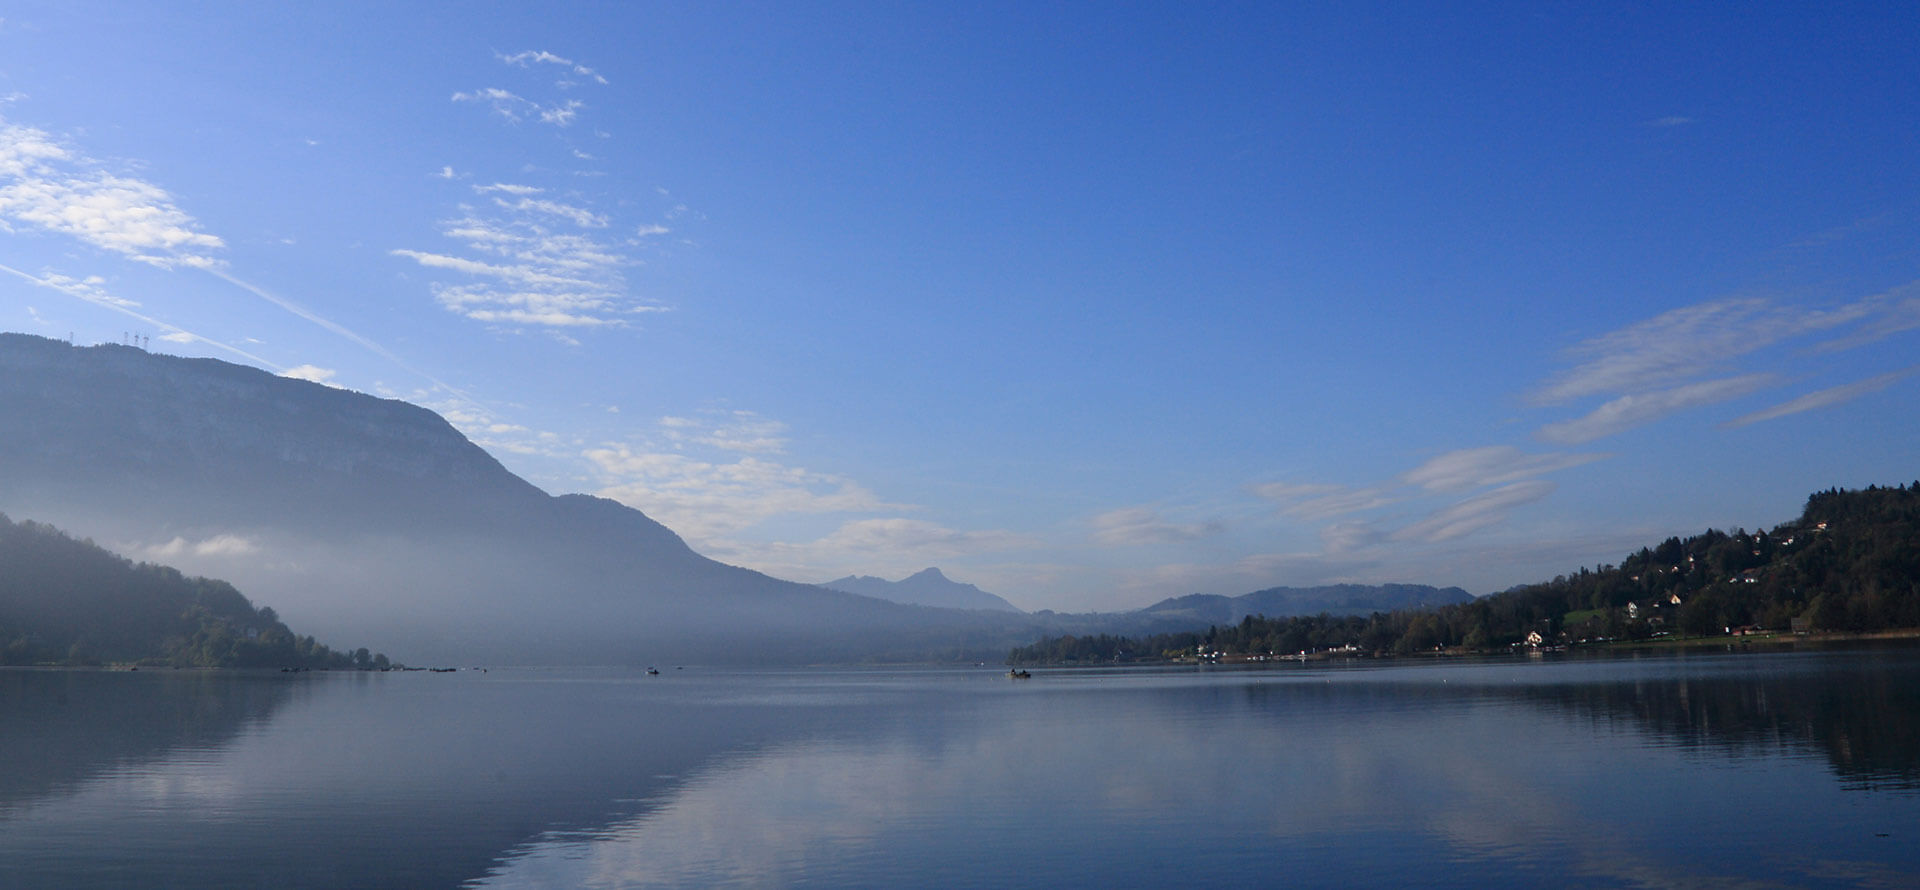 Vue d'ensemble du lac d'Aiguebelette en Savoie